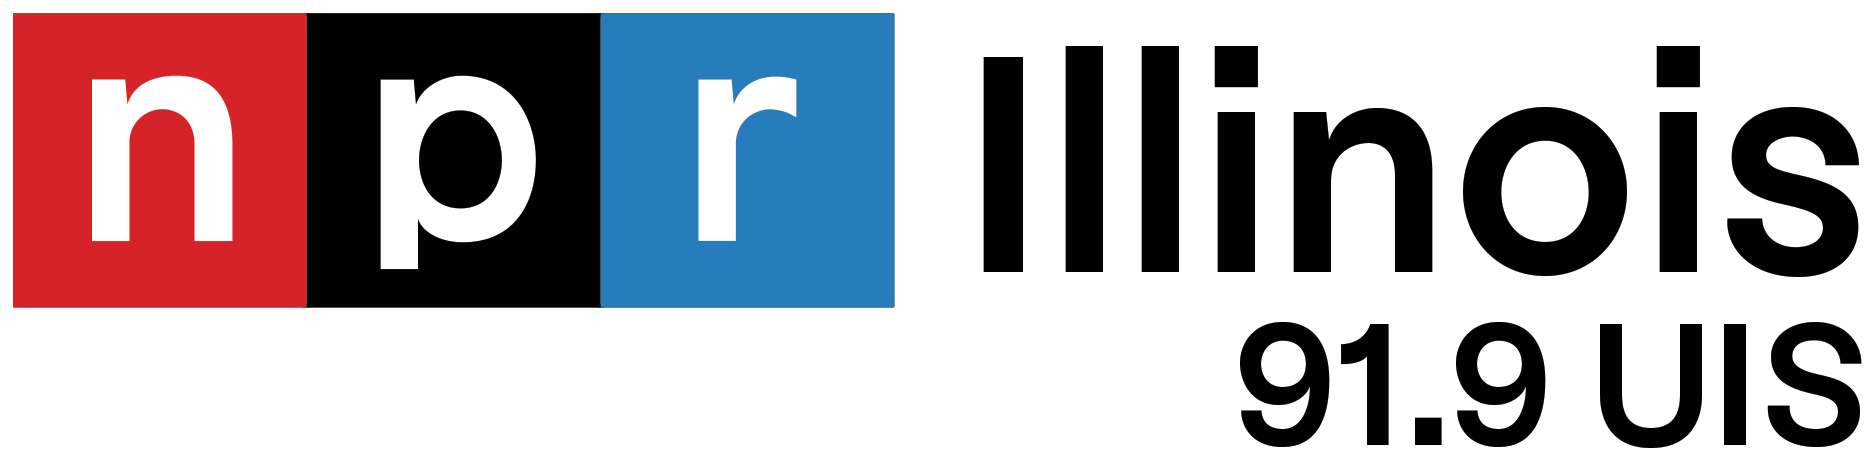 NPR Illinois 91.9 UIS Logo